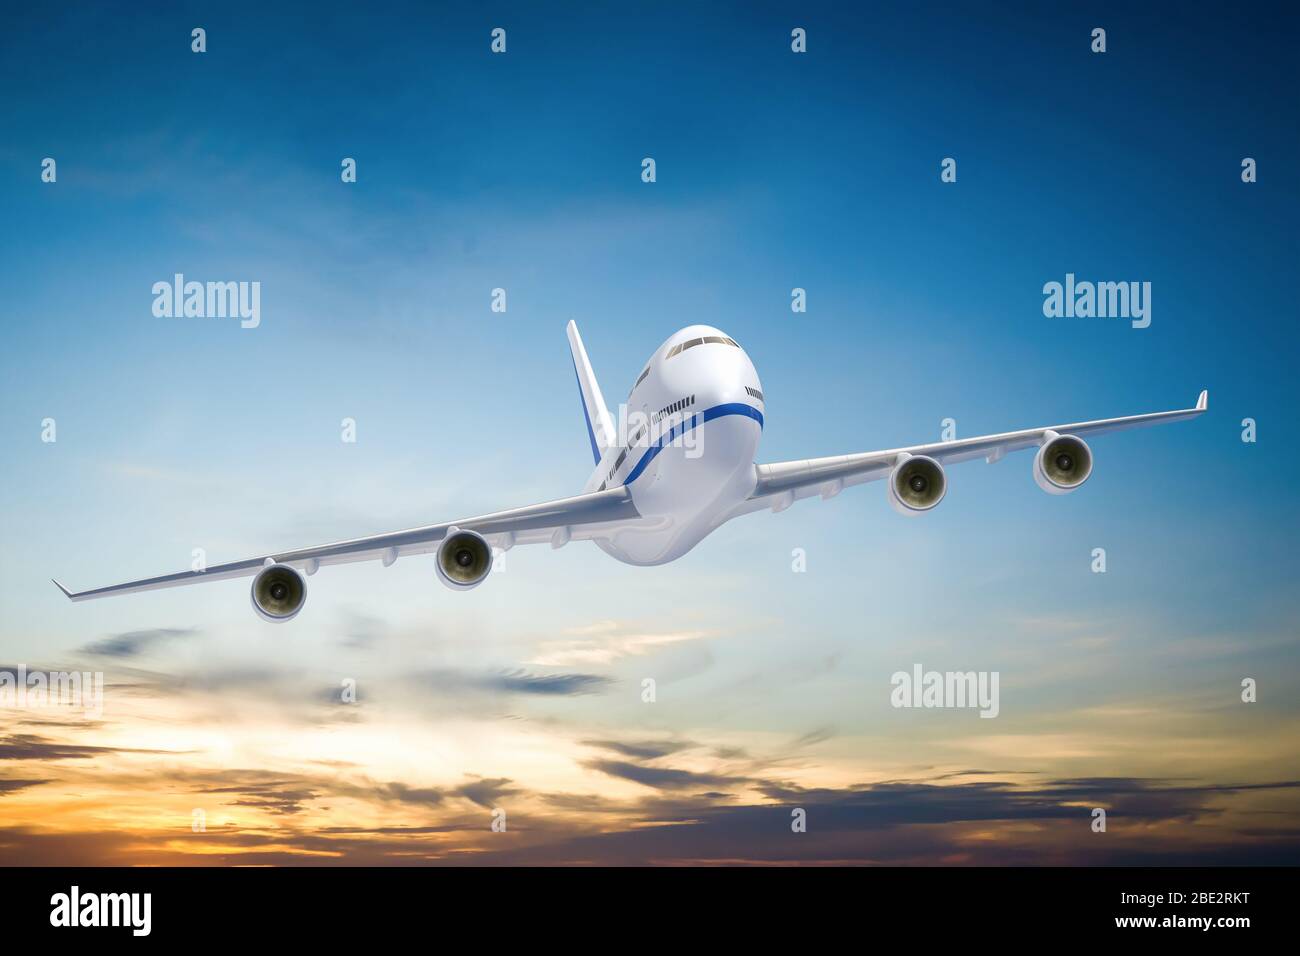 Ein Flugzeug in der Luft Stock Photo - Alamy